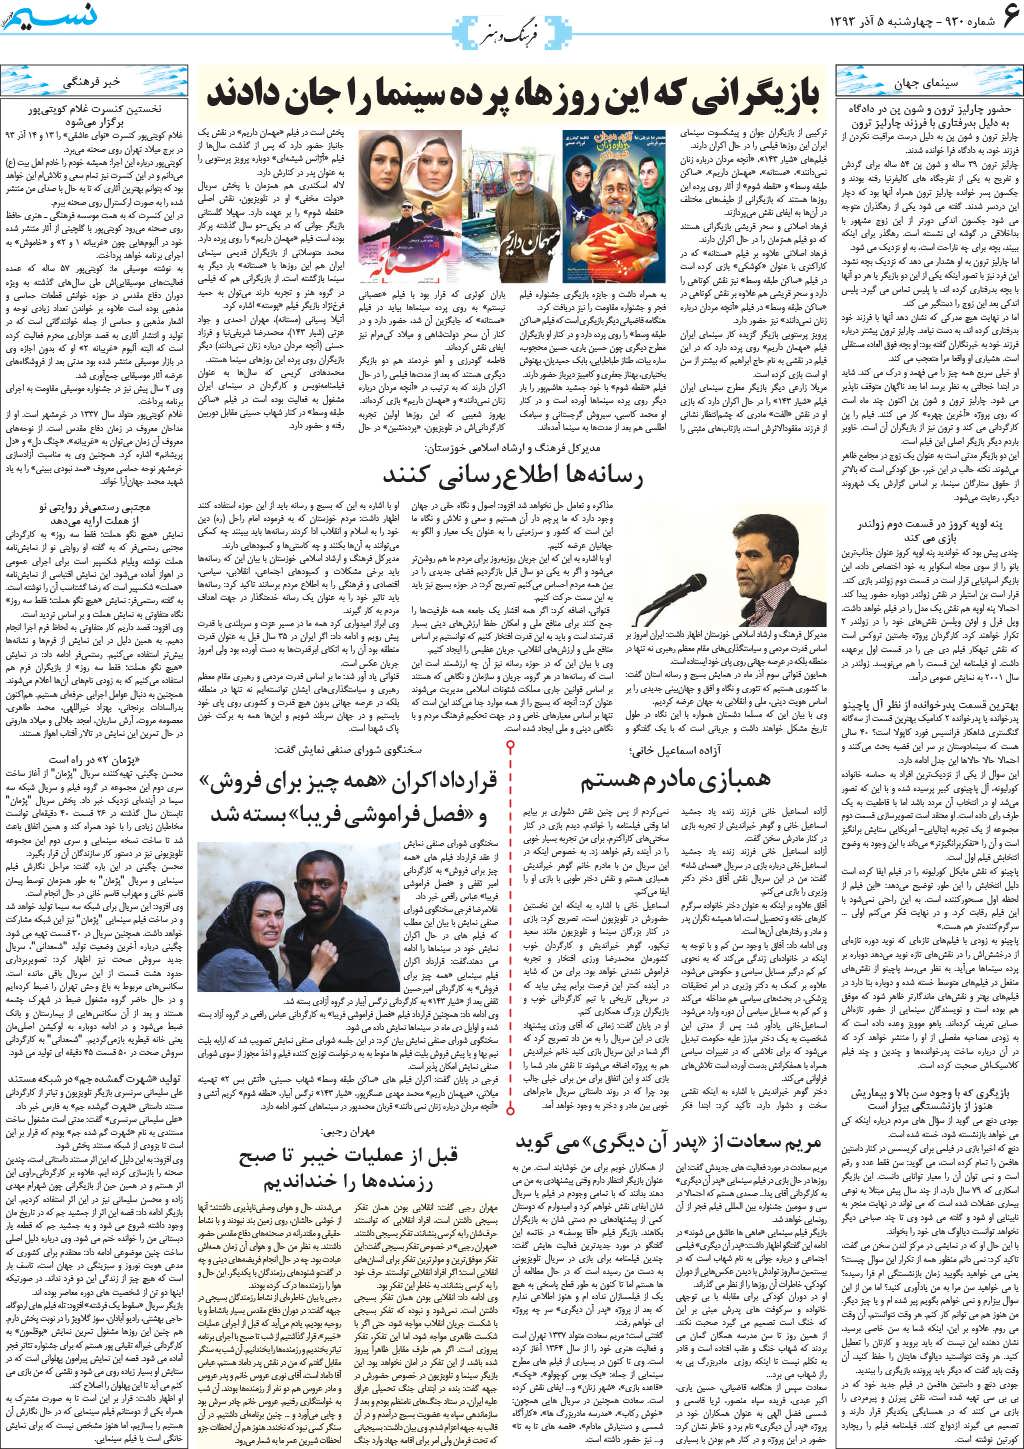 صفحه فرهنگ و هنر روزنامه نسیم شماره 930